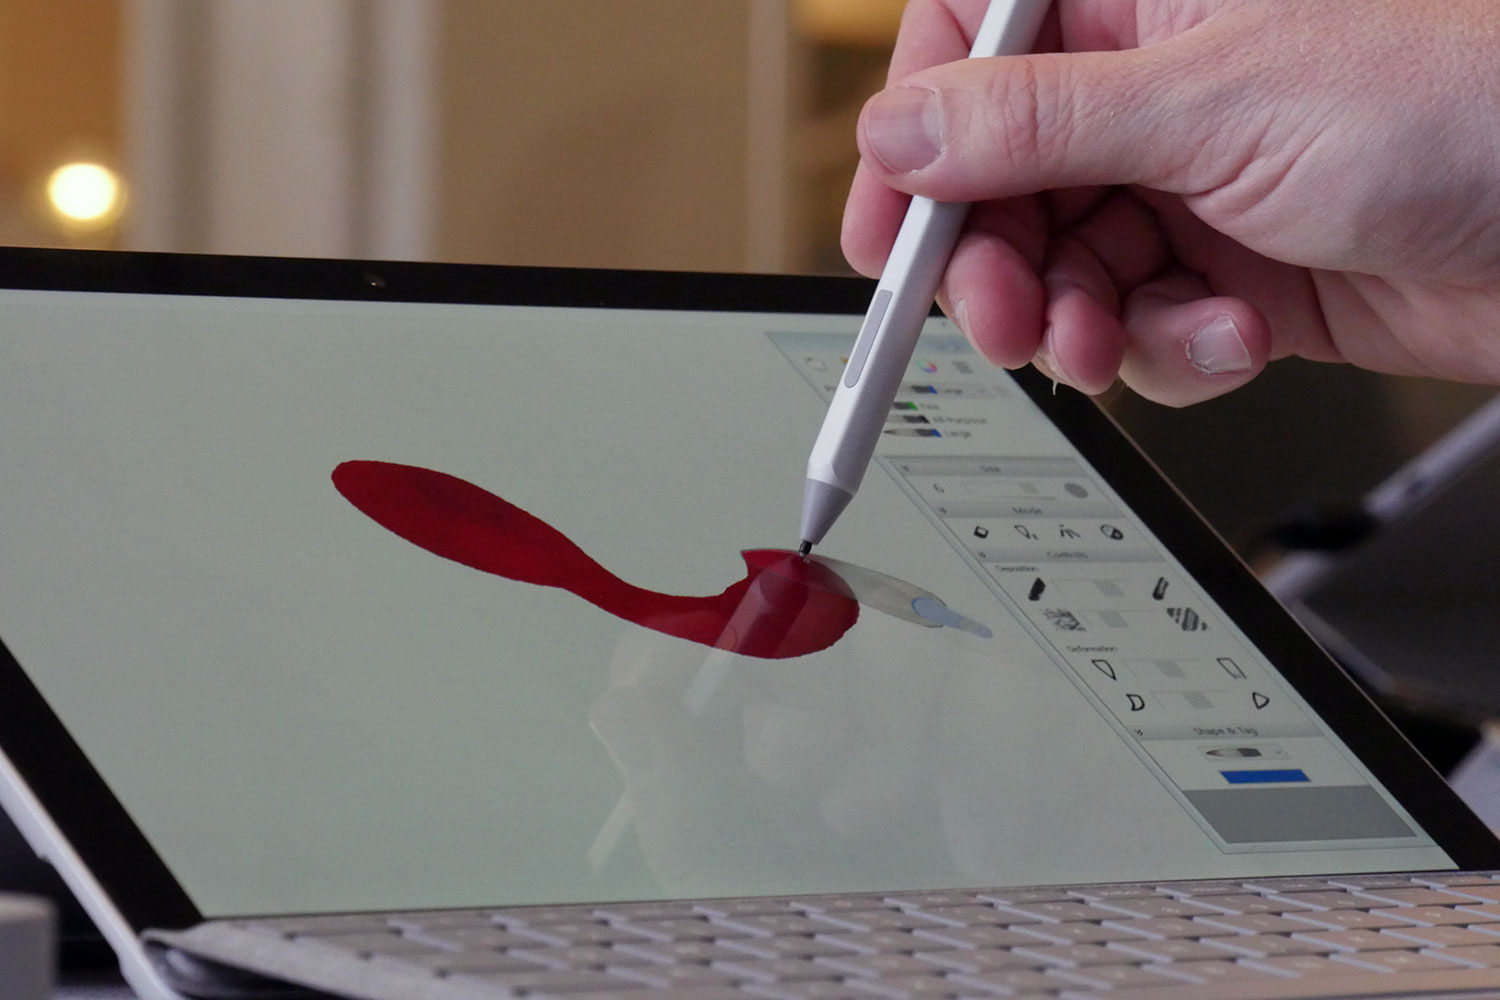 Microsoft presenta la nueva Surface Pro 5, todo lo que debes saber